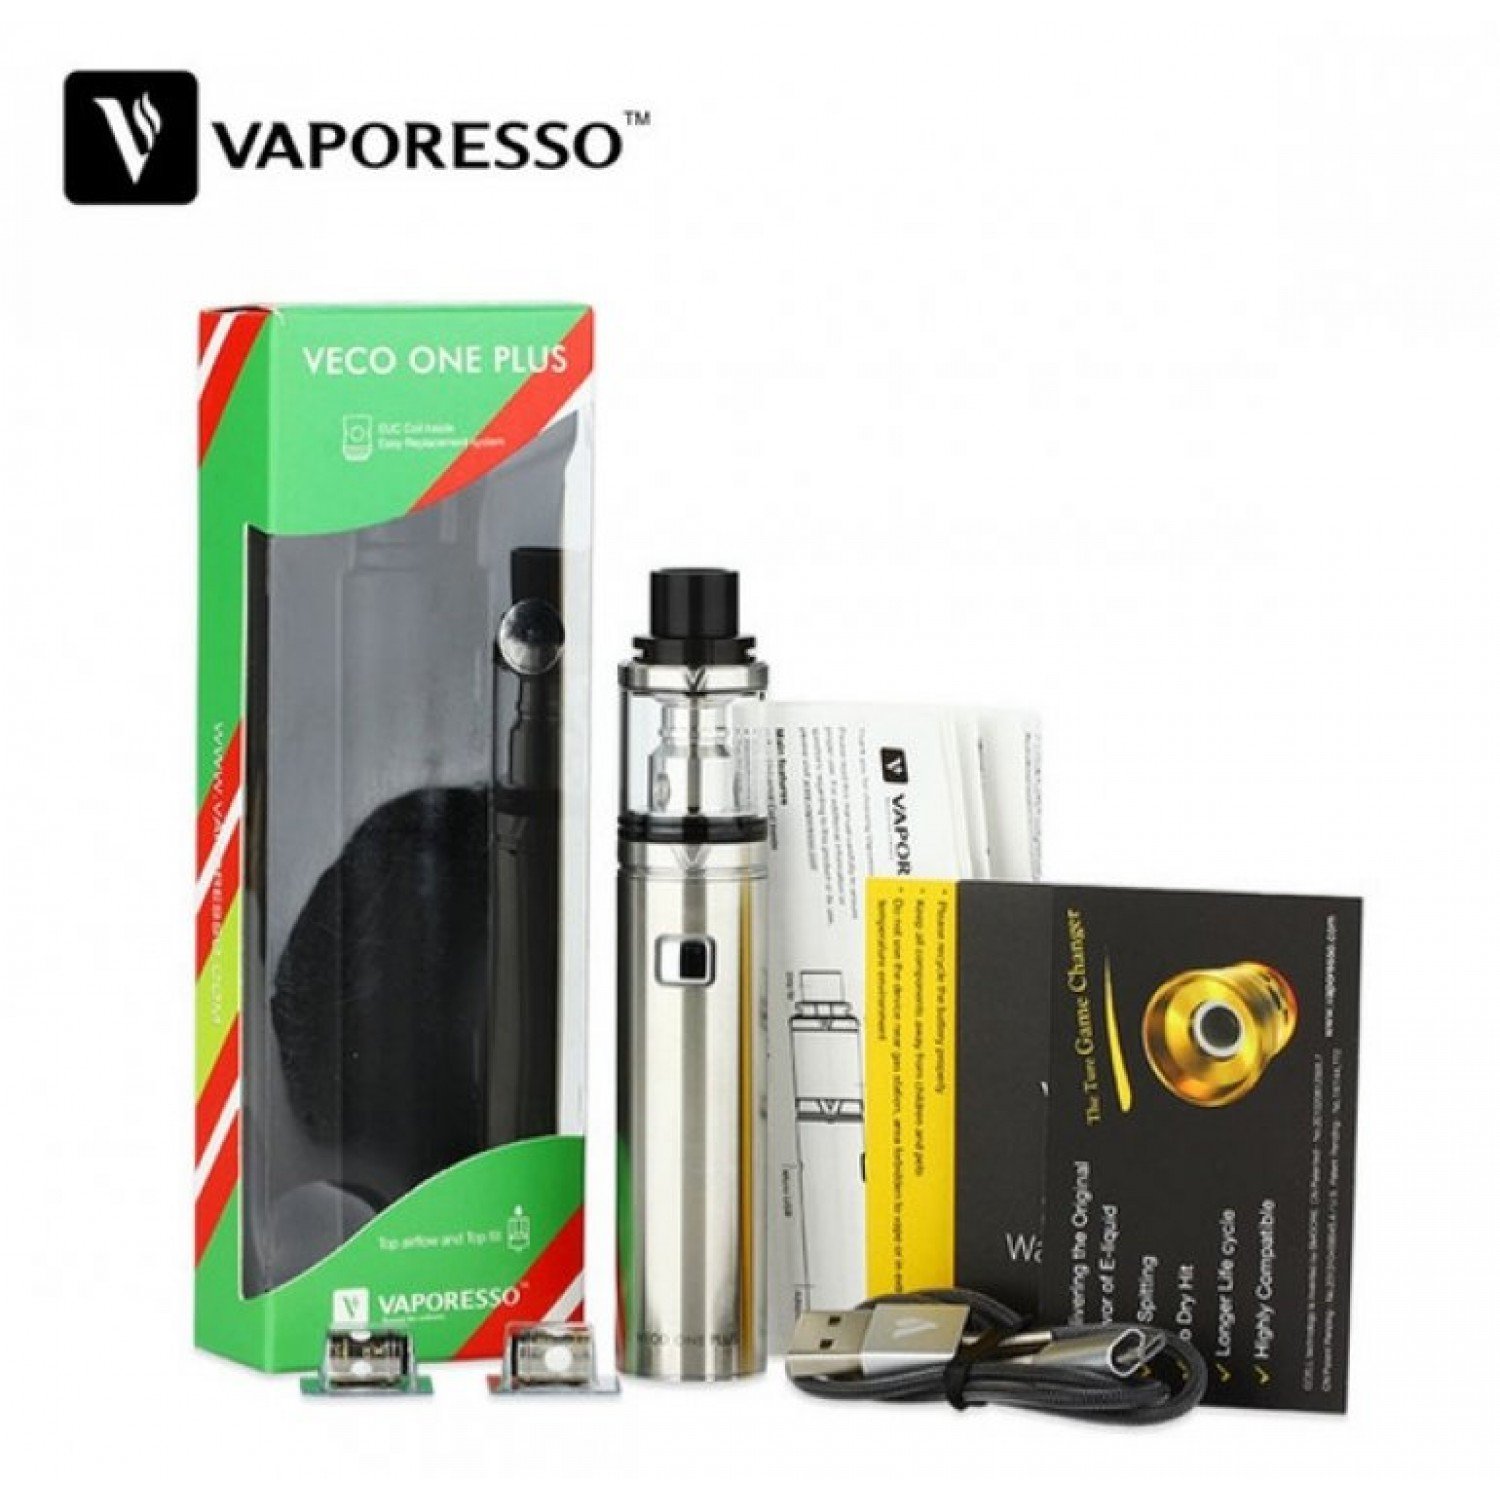 Vaporesso - Veco One Plus 3300 mah 4 ml Elektronik Sigara Kit